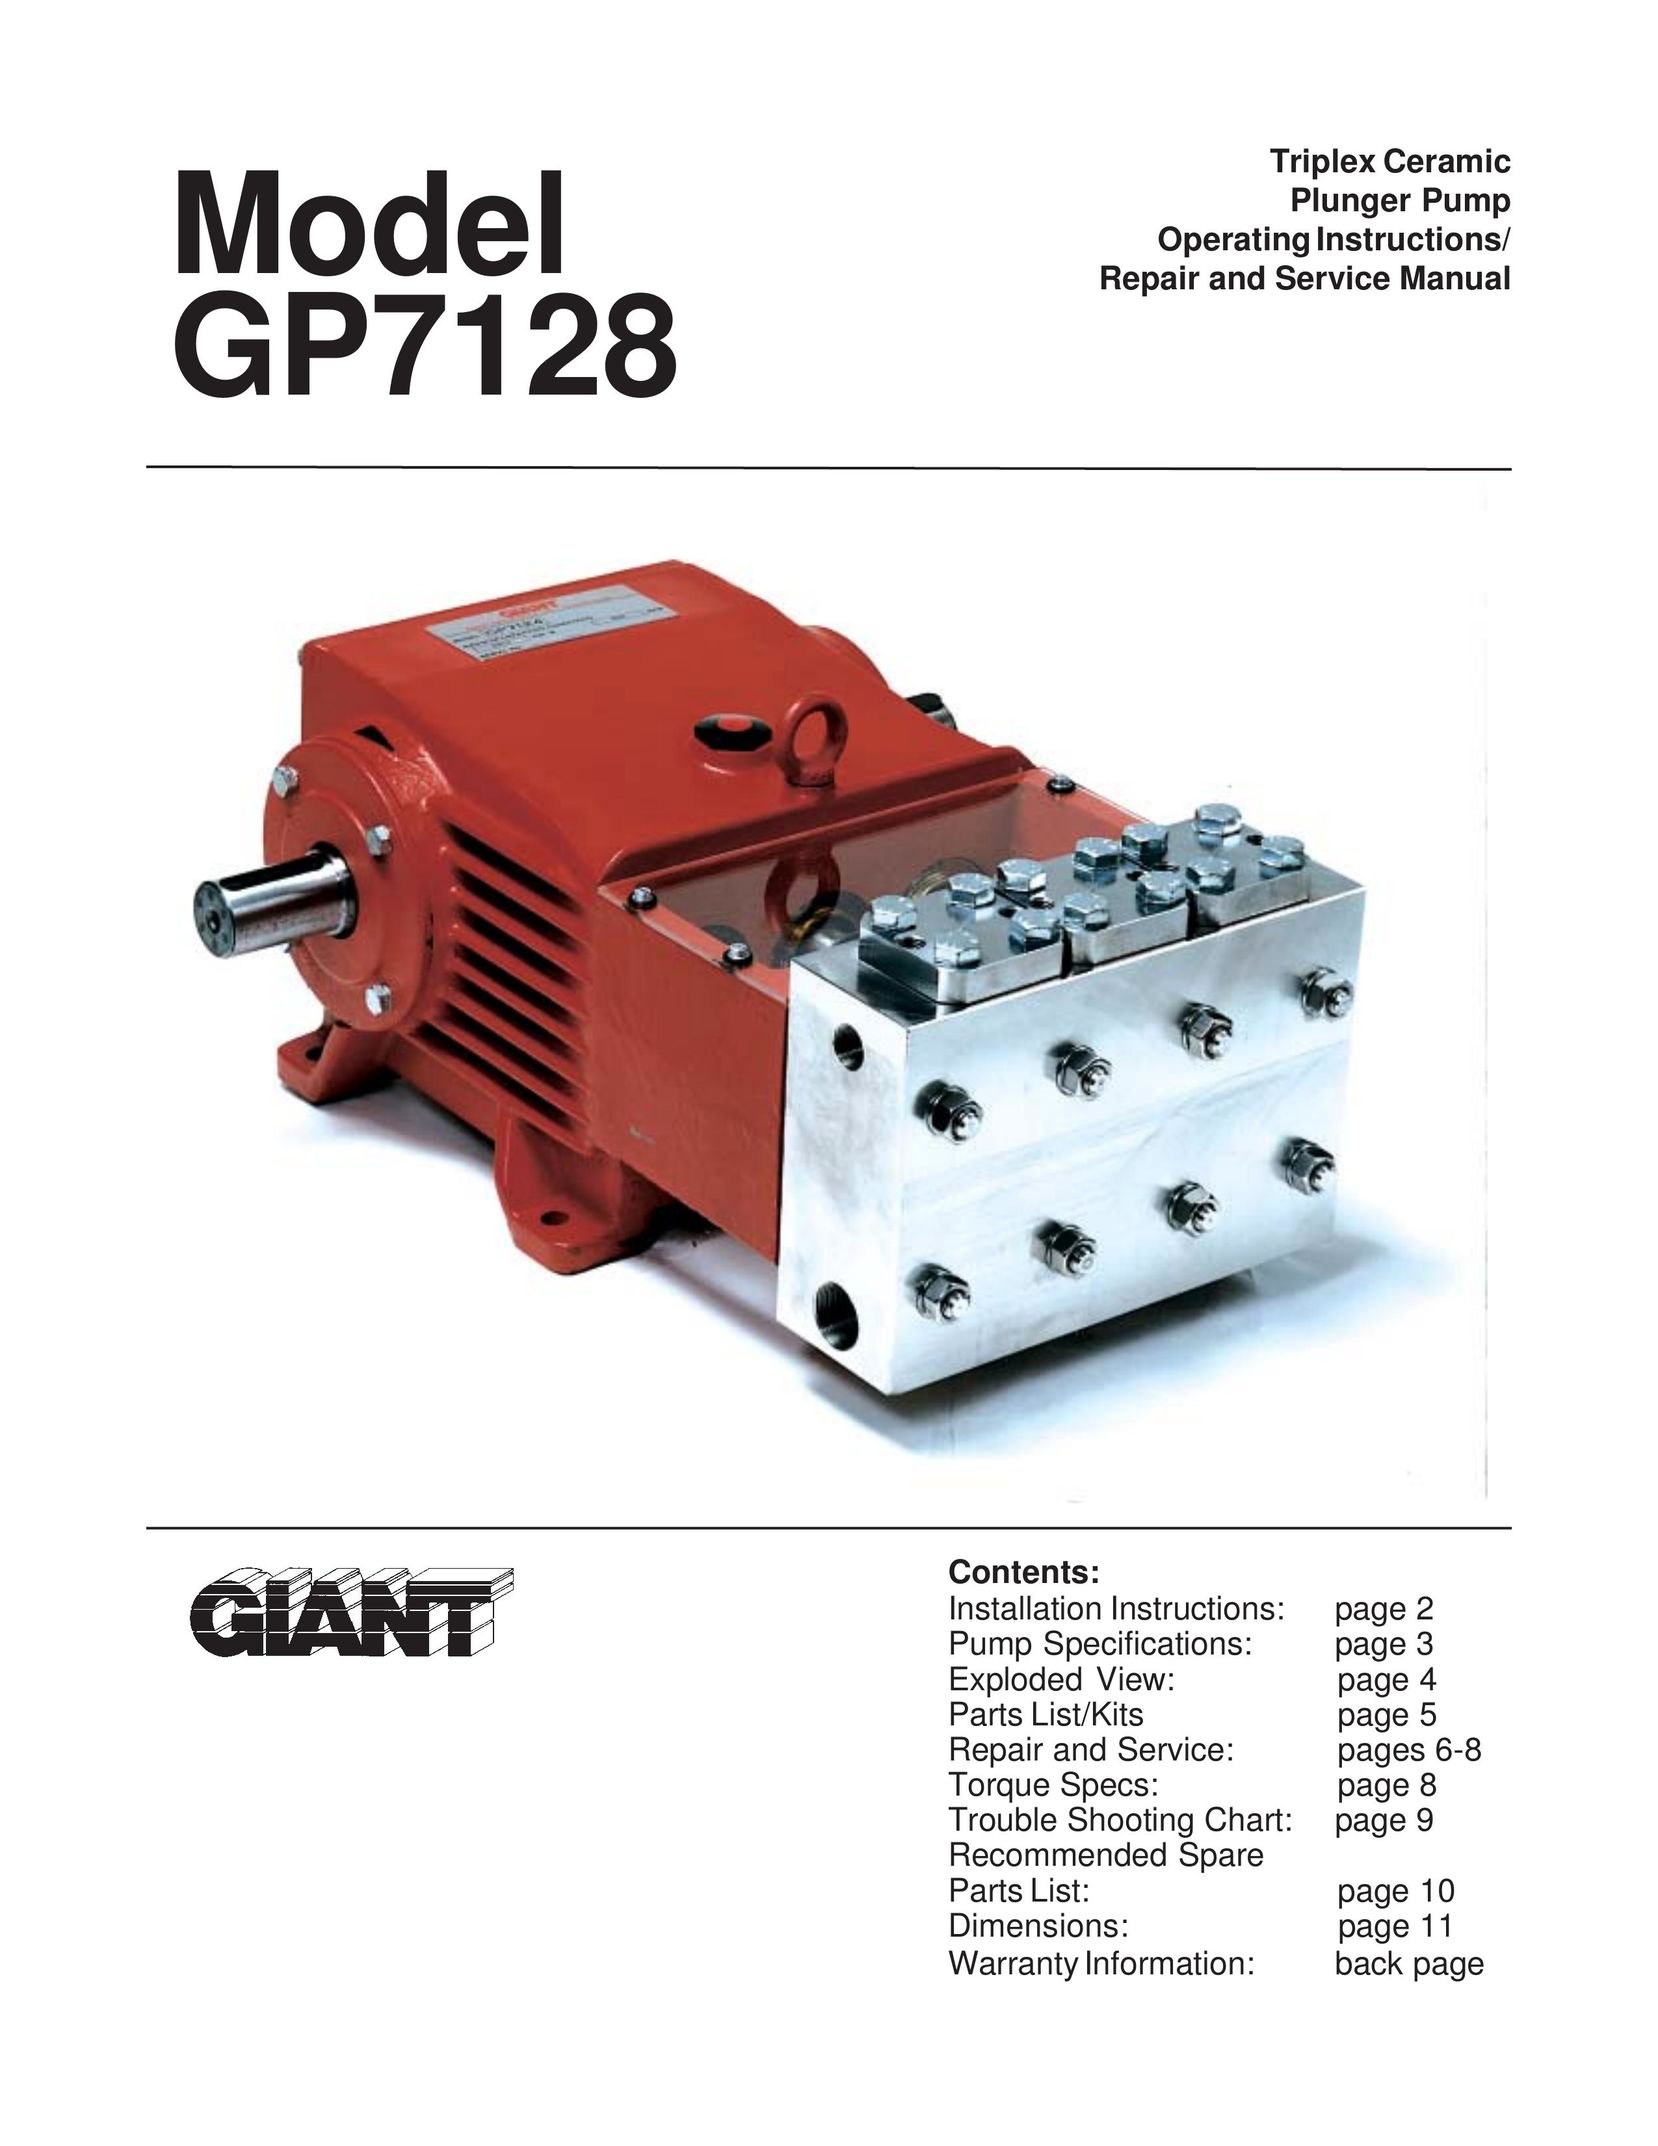 Giant GP7128 Water Pump User Manual